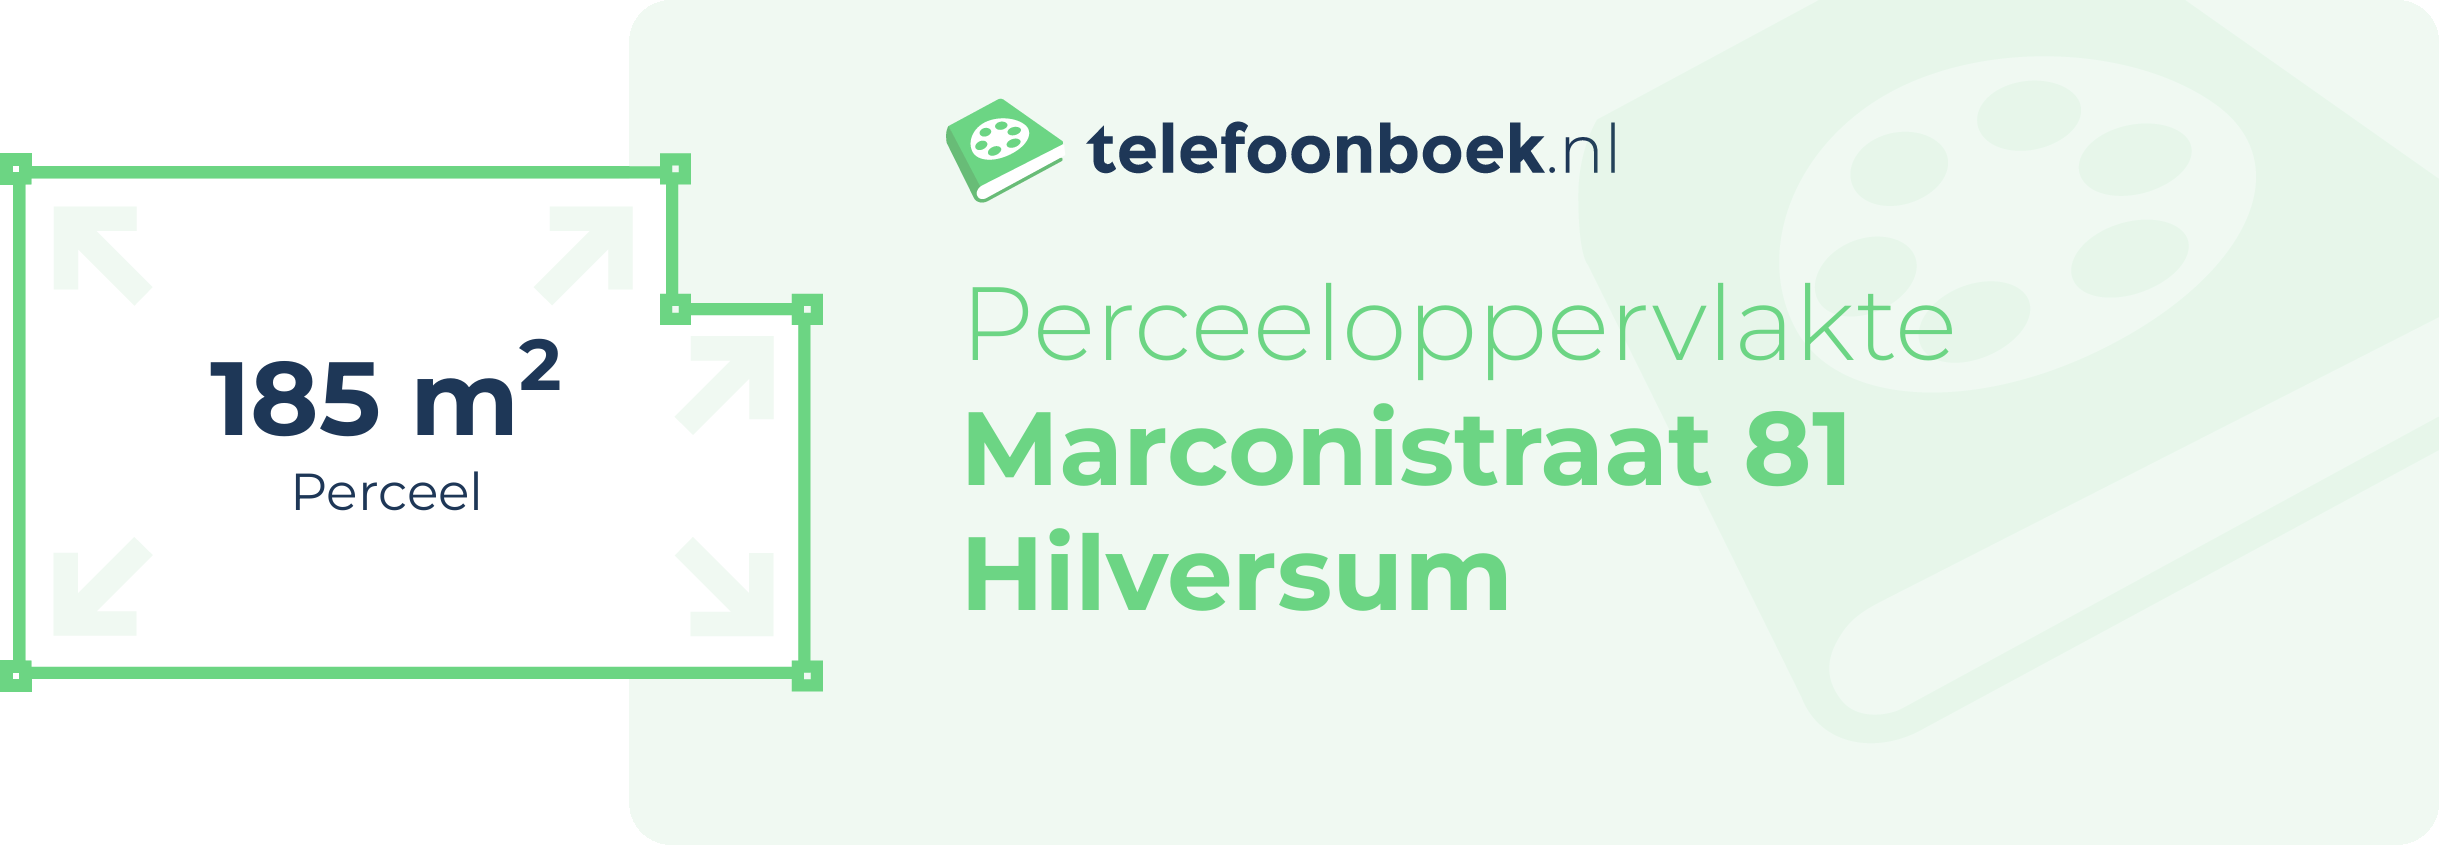 Perceeloppervlakte Marconistraat 81 Hilversum